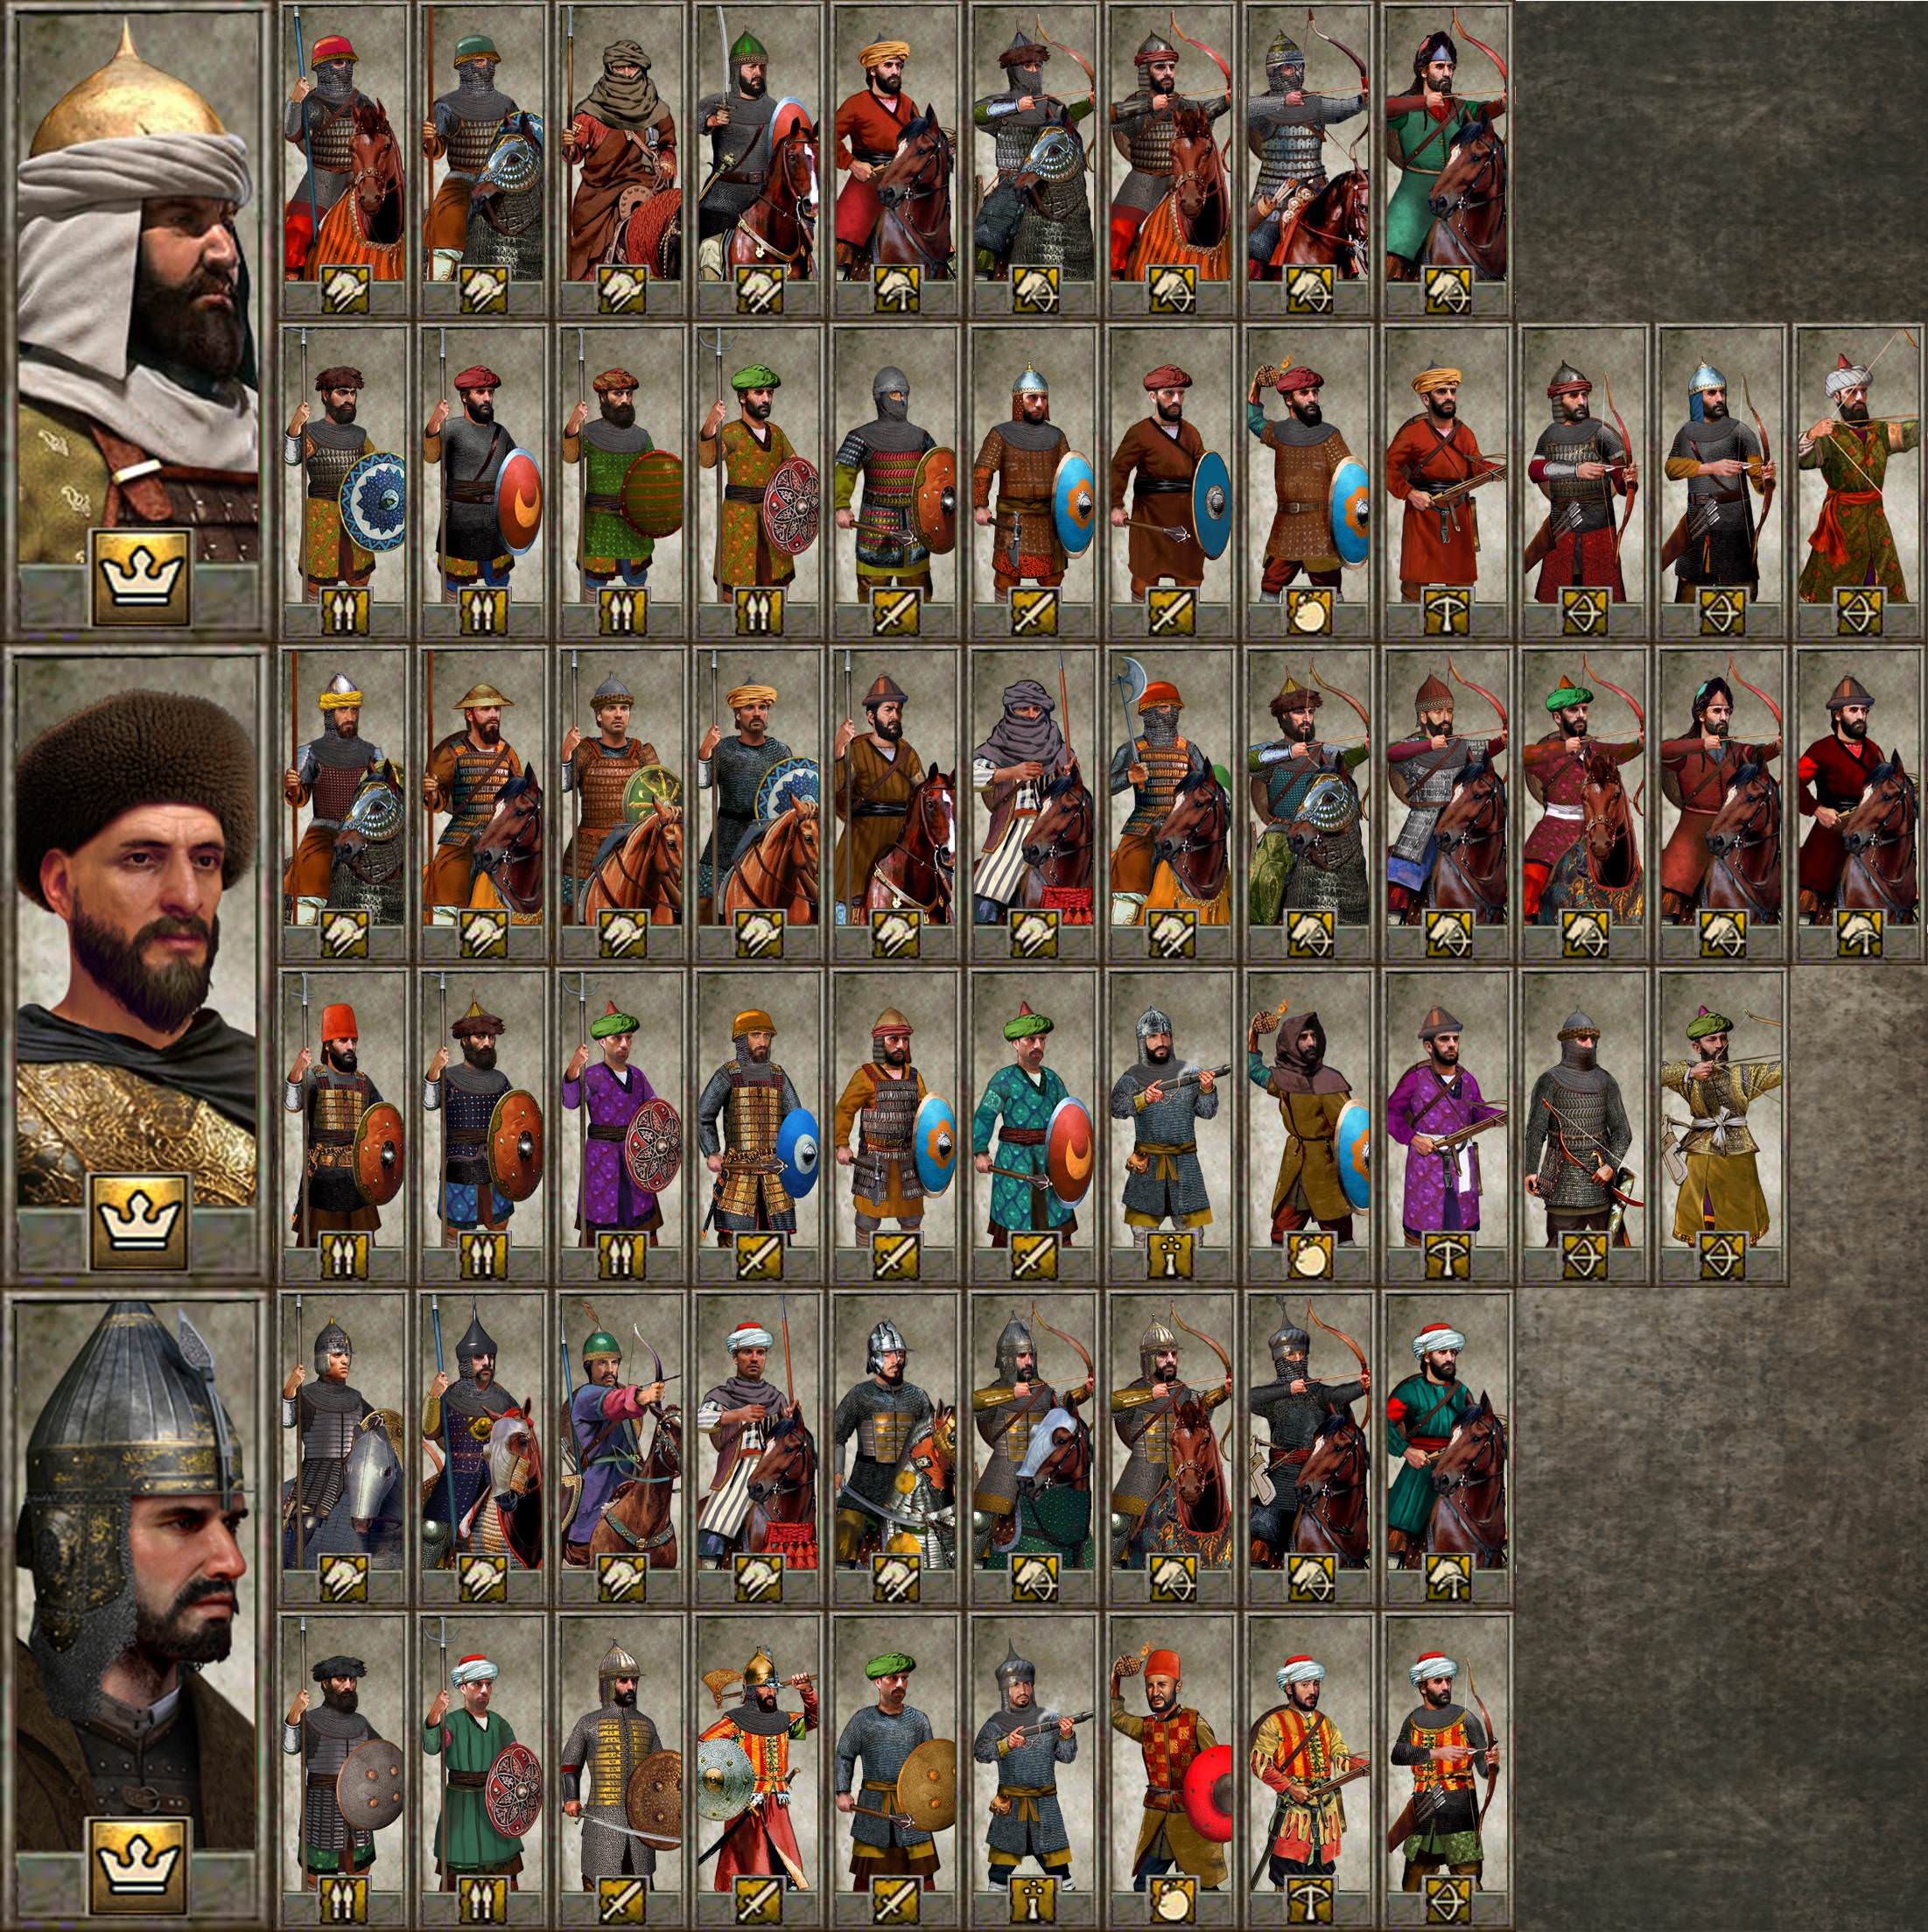 medieval kingdoms total war attila 1212 ad factions